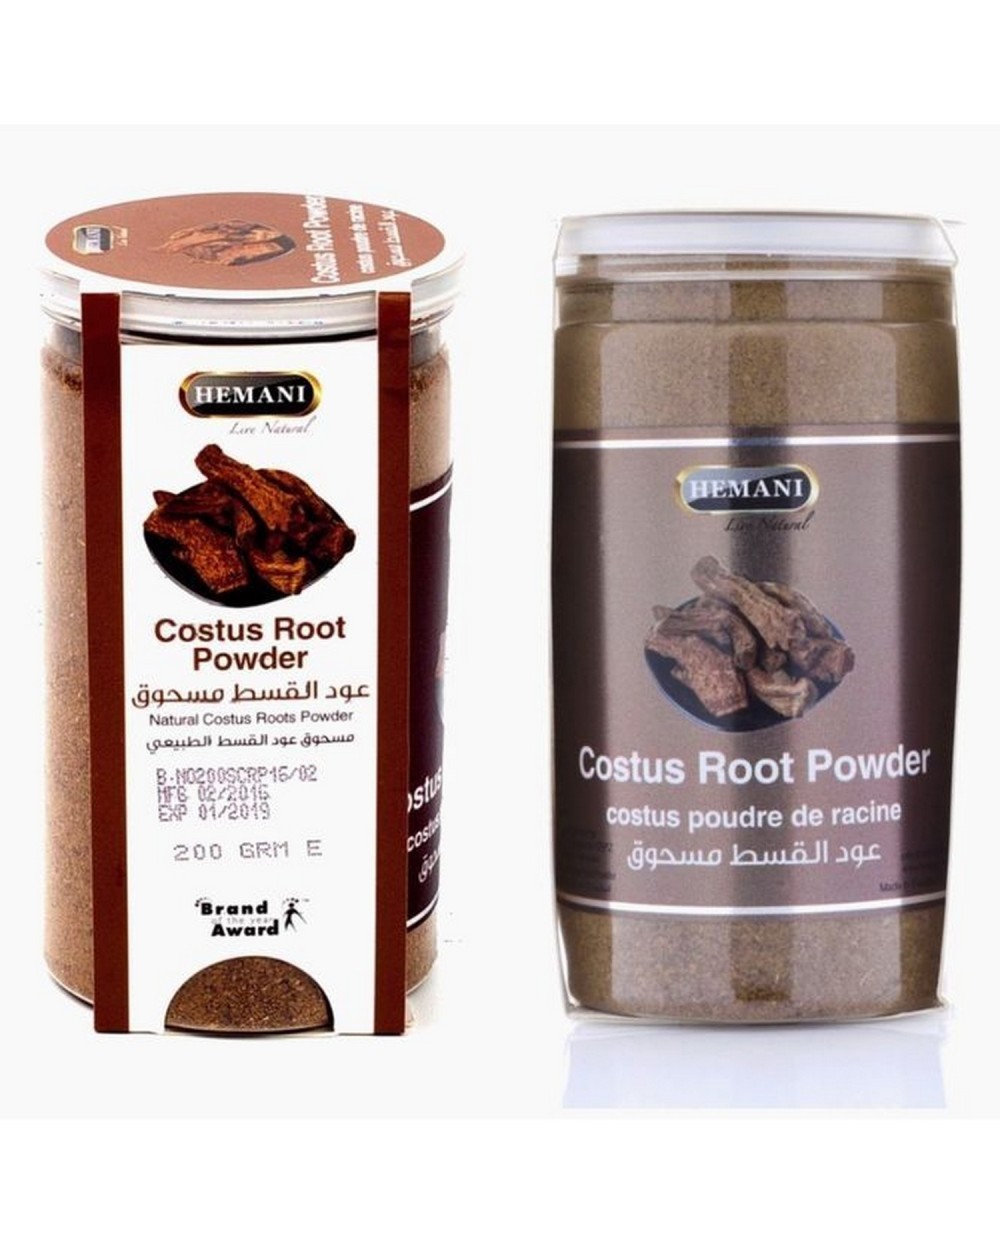 Costus root powder - Hemani